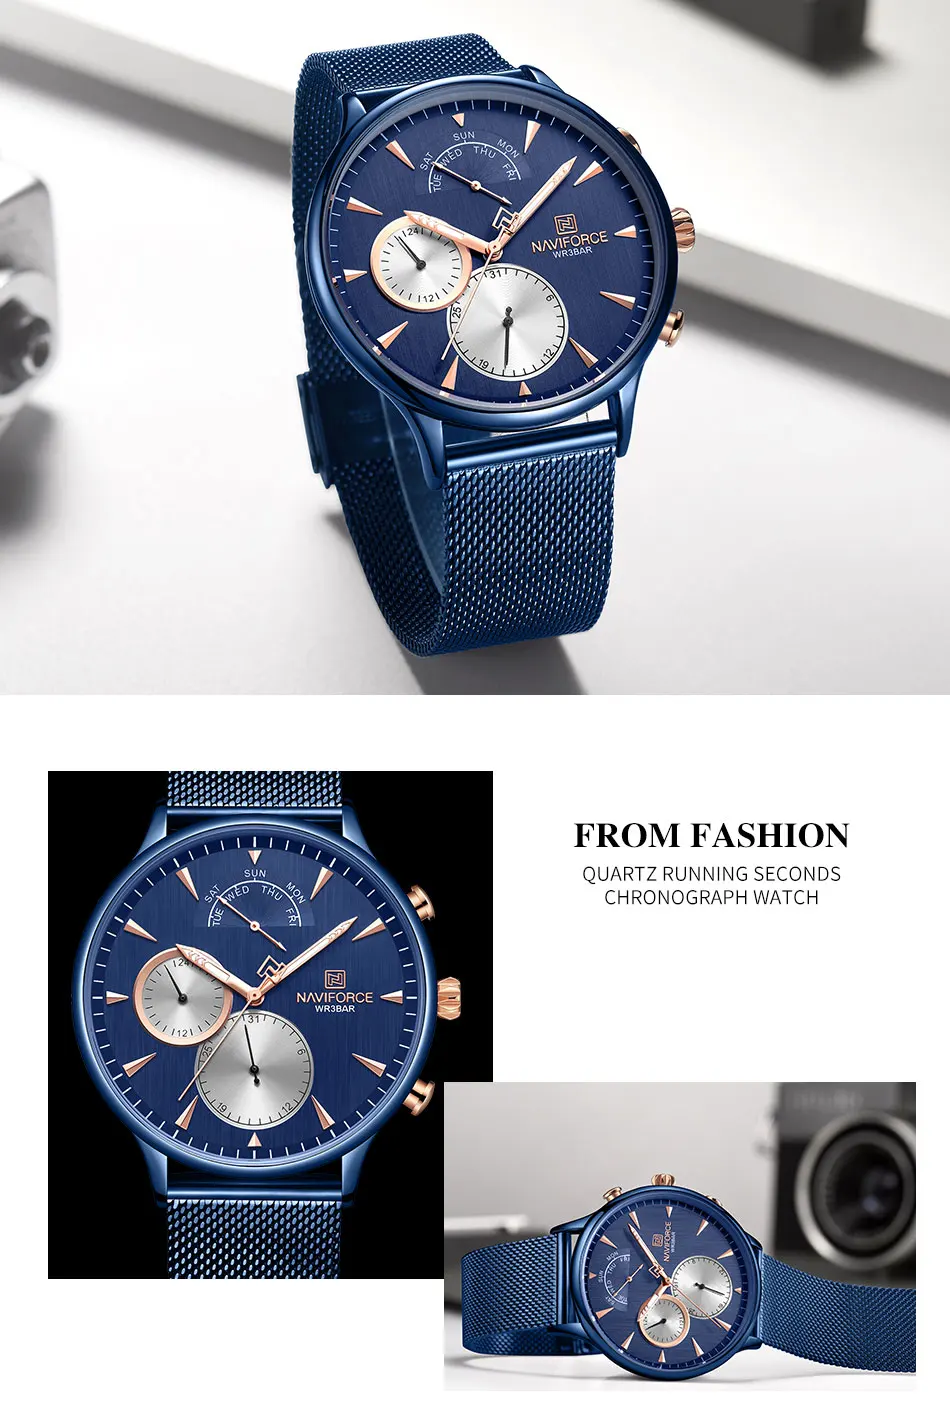 NAVIFORCE новые модные мужские часы светящийся хронограф водонепроницаемые спортивные кварцевые часы наручные часы для мужчин Reloj Hombre